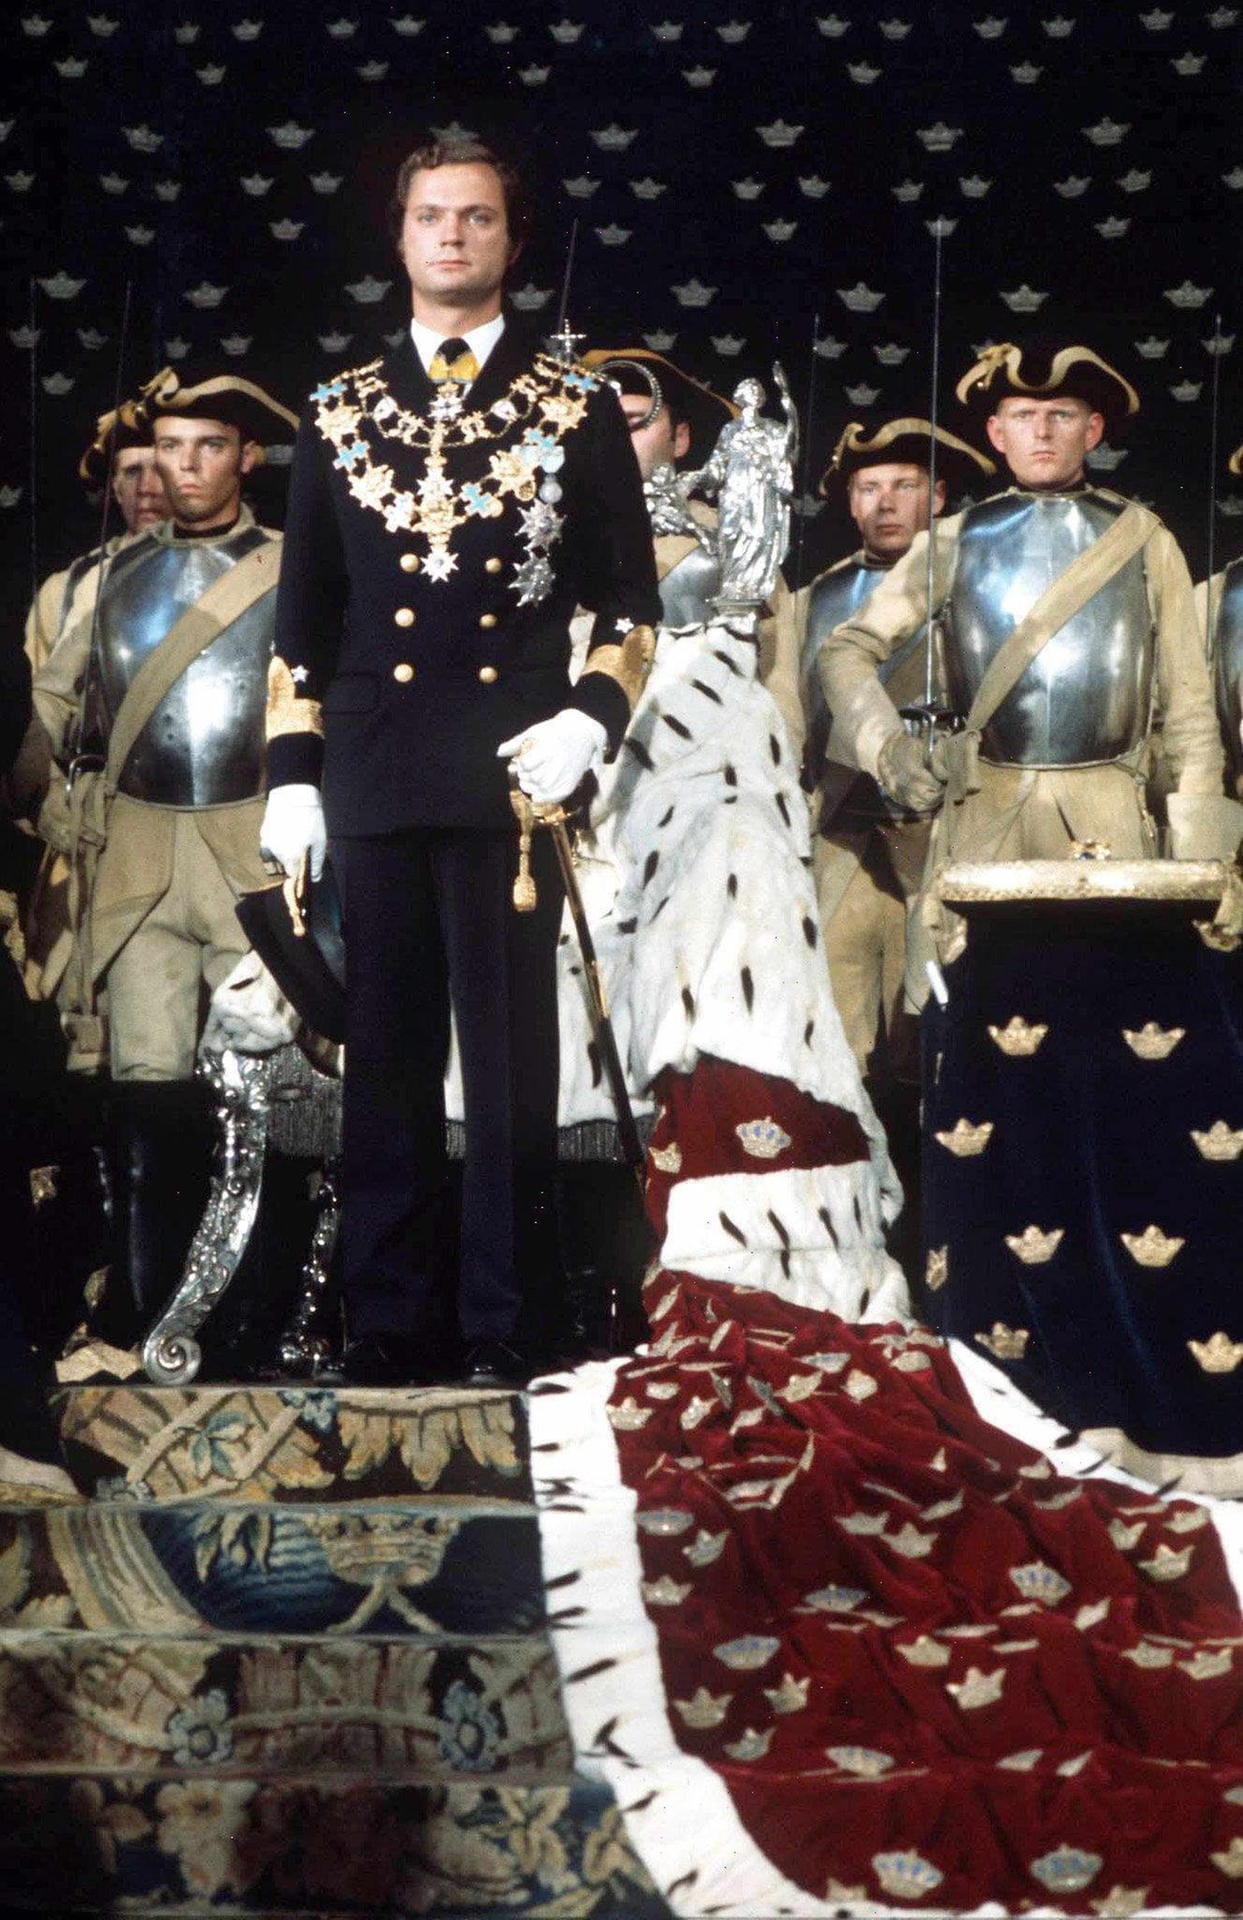 15. September 1973: Carl Gustaf wird König von Schweden. Sein Vater war bei einem Flugzeugabsturz ums Leben gekommen als der heutige Monarch neun Monate alt war. So folgte er nach dem Tod seines Großvaters diesen auf dem Thron. Carl Gustaf war zu jenem Zeitpunkt 27 Jahre alt. Zuvor hatte er sein Abitur gemacht und militärische Ausbildungen durchlaufen.